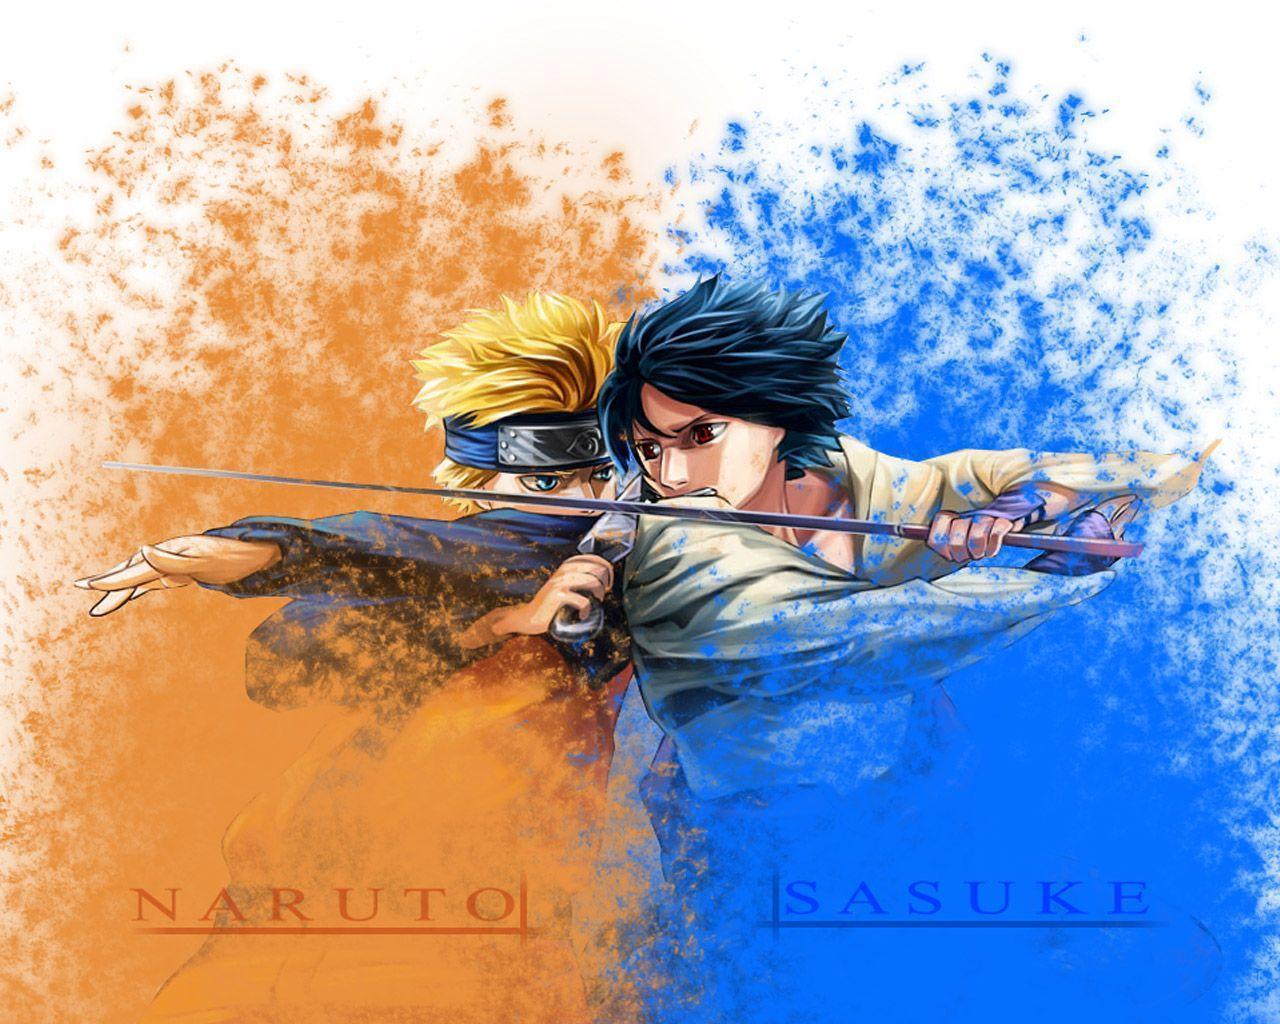 Naruto Sasuke wallpaper